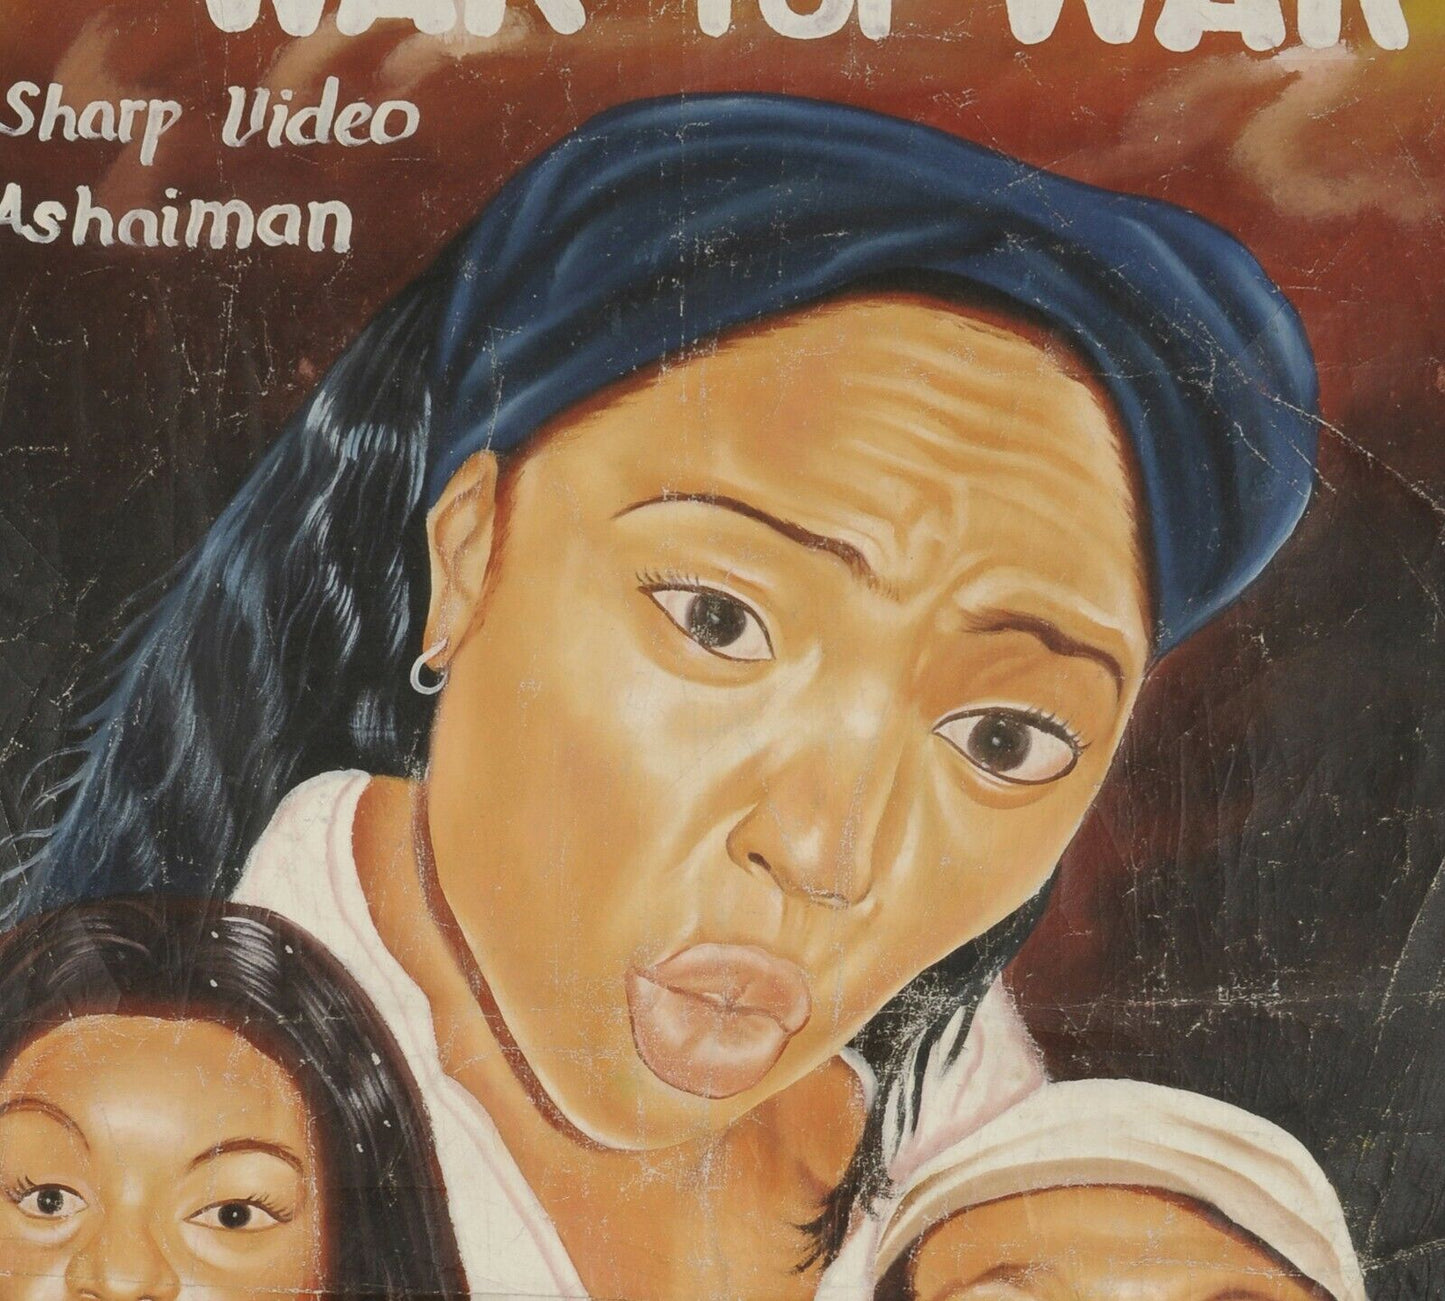 Αφίσα κινηματογράφου Αφρικανική ταινία της Γκάνας ζωγραφική στο χέρι καμβάς από αλεύρι σάκος ΠΟΛΕΜΟΣ ΓΙΑ ΠΟΛΕΜΟ - Tribalgh